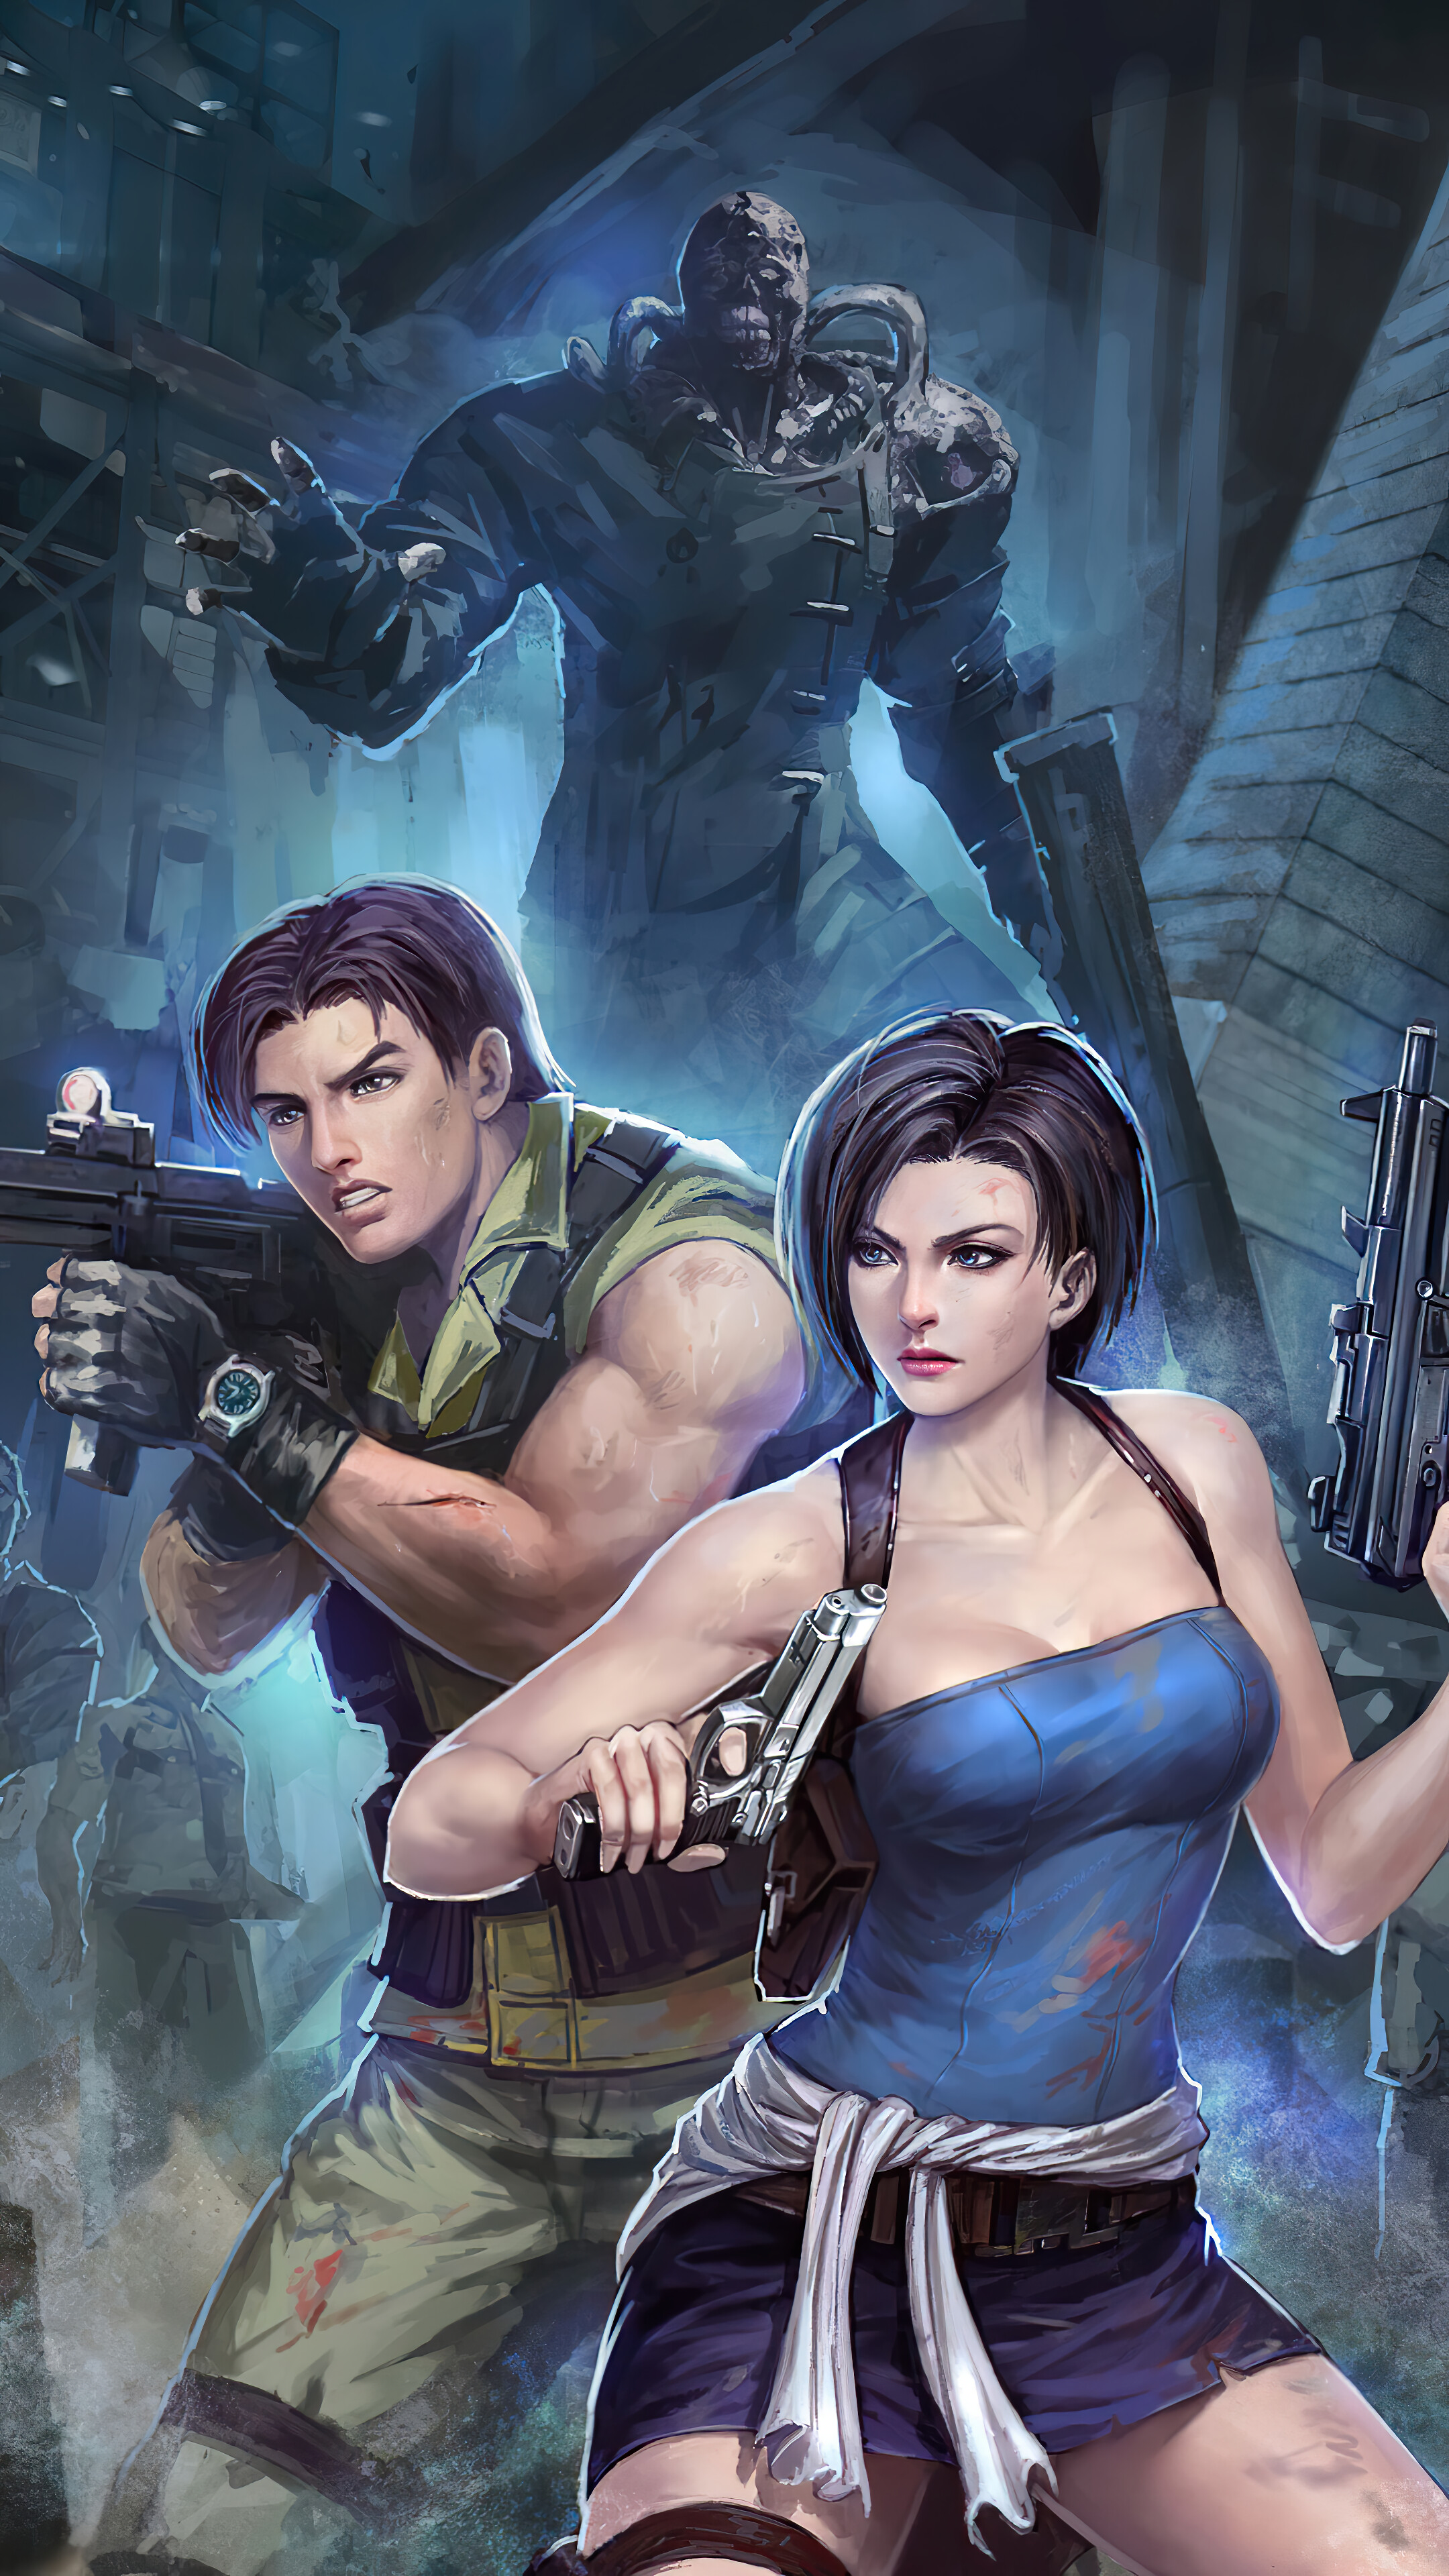 Leon Resident Evil 4 Remake 2023 Gaming Poster 4K Ultra HD Mobile Wallpaper